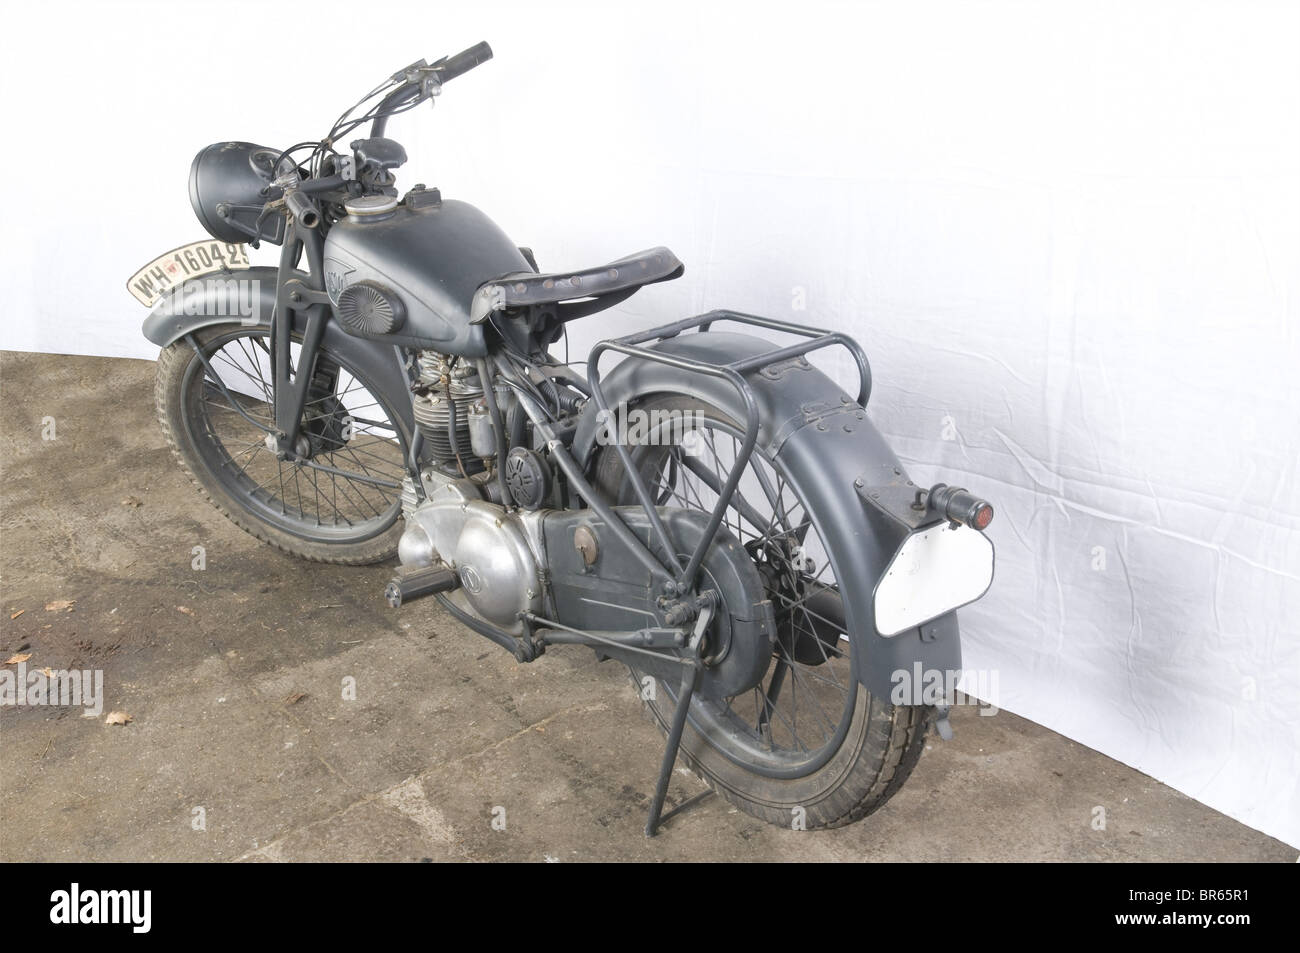 Vehules MILITAIRES, Moto NSU OSL 251 WH, A l'origine fabricant de Machines à coudre, la firme NSU fondée en 1890, est surtout connue pour ses motos de compétions qui en font un des grands de la construction de motocyclettes d'avant-guerre. Dès 1940, la totité de la production sera réservée à l'armée et ce jusqu'à la fin du conflit. Moins connue que la 250 deux temps, le modèle OSL 25l à quatre temps construit entre 1933 et 1940, reste une moto unique par la qualité de sa fabrication ainsi que par sa robustesse. Poids est de 132 kg et sa vitesse maxima, Foto Stock